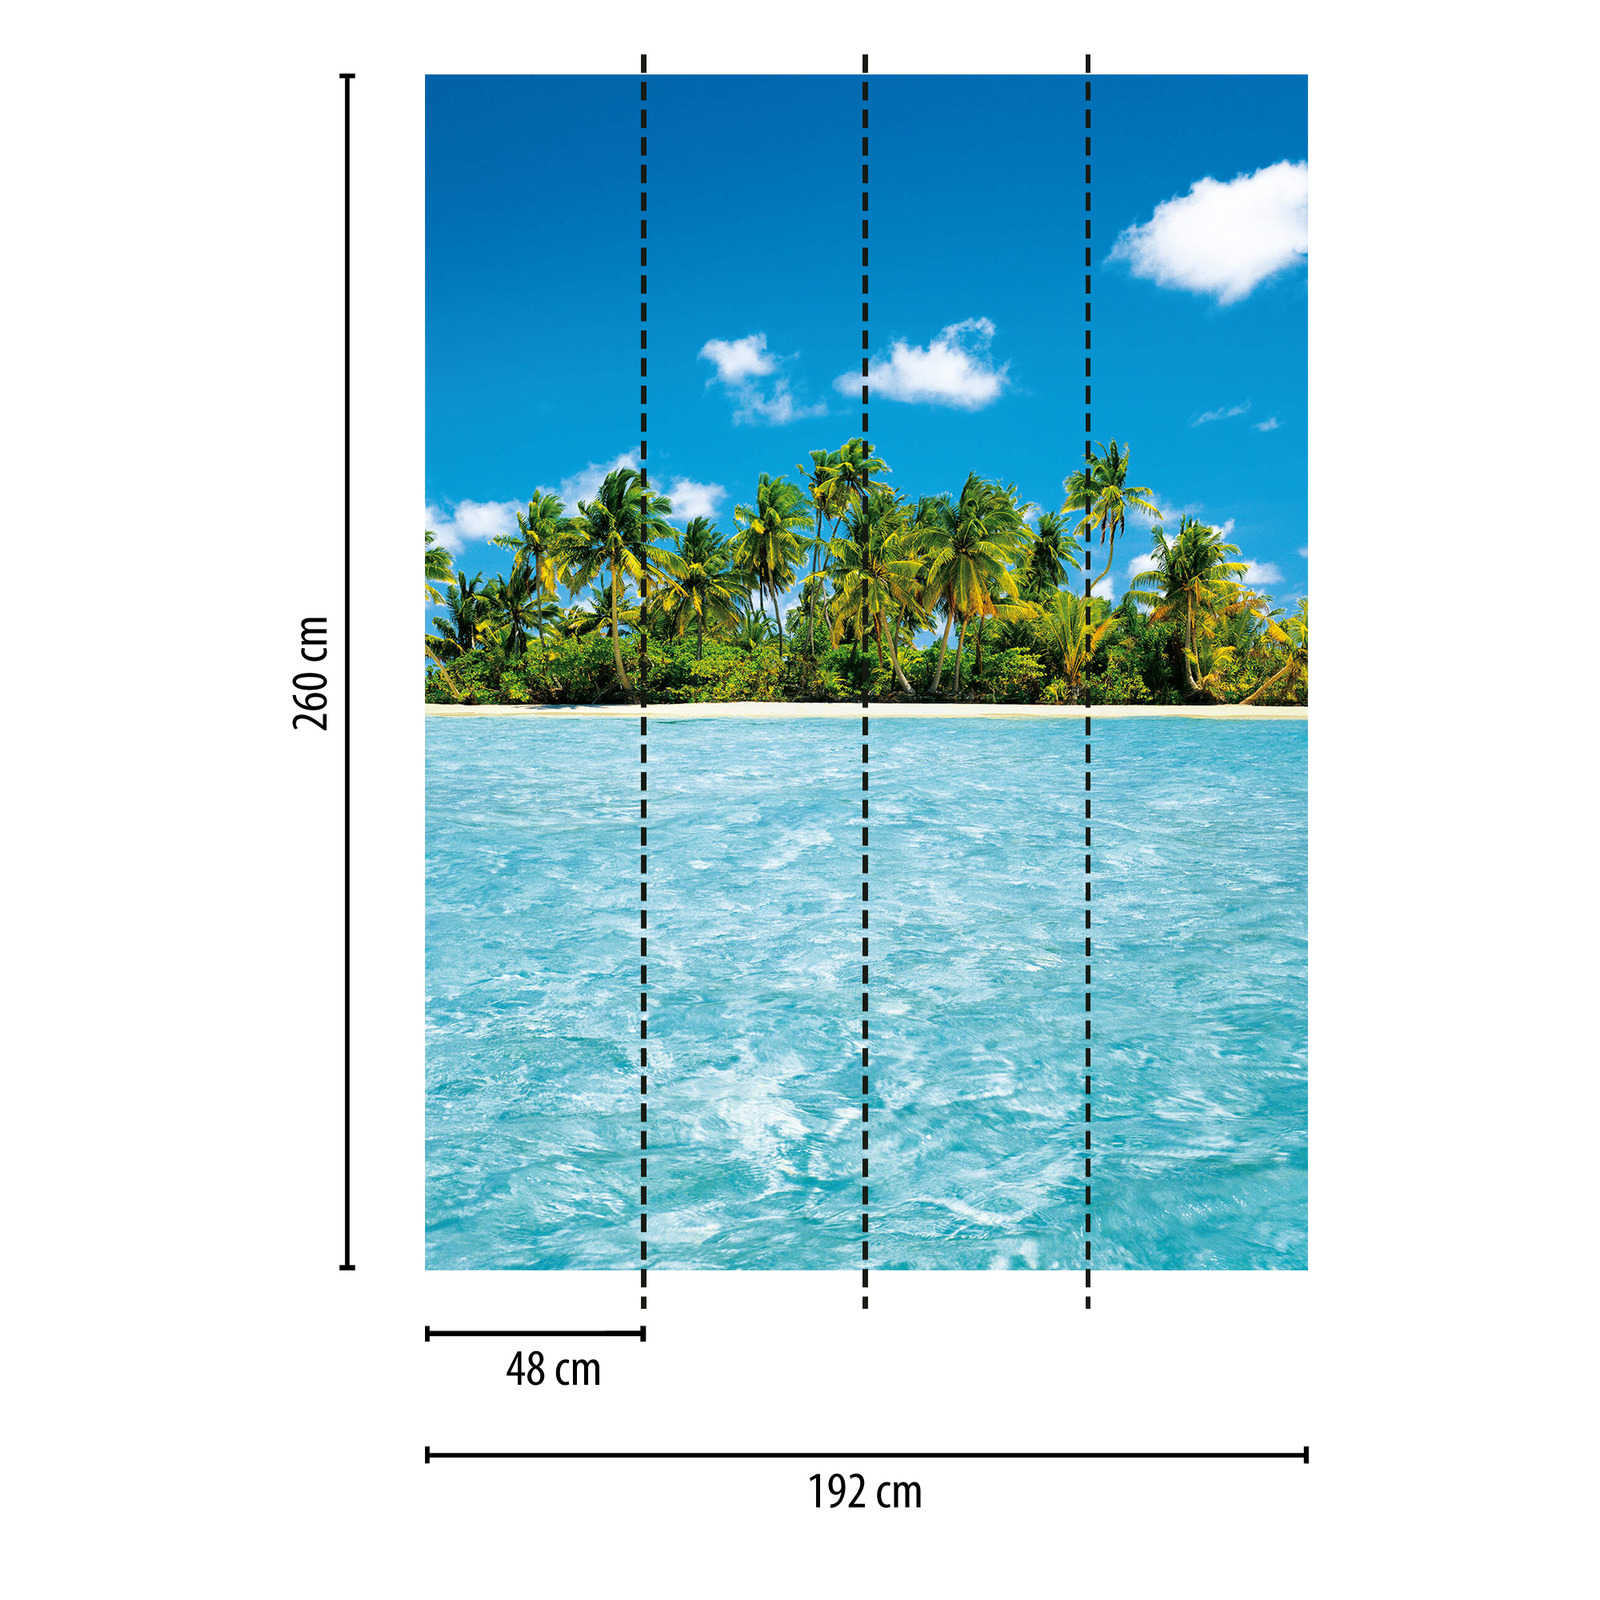             Maldives Papier peint panoramique Île de palmiers & mer, portrait
        